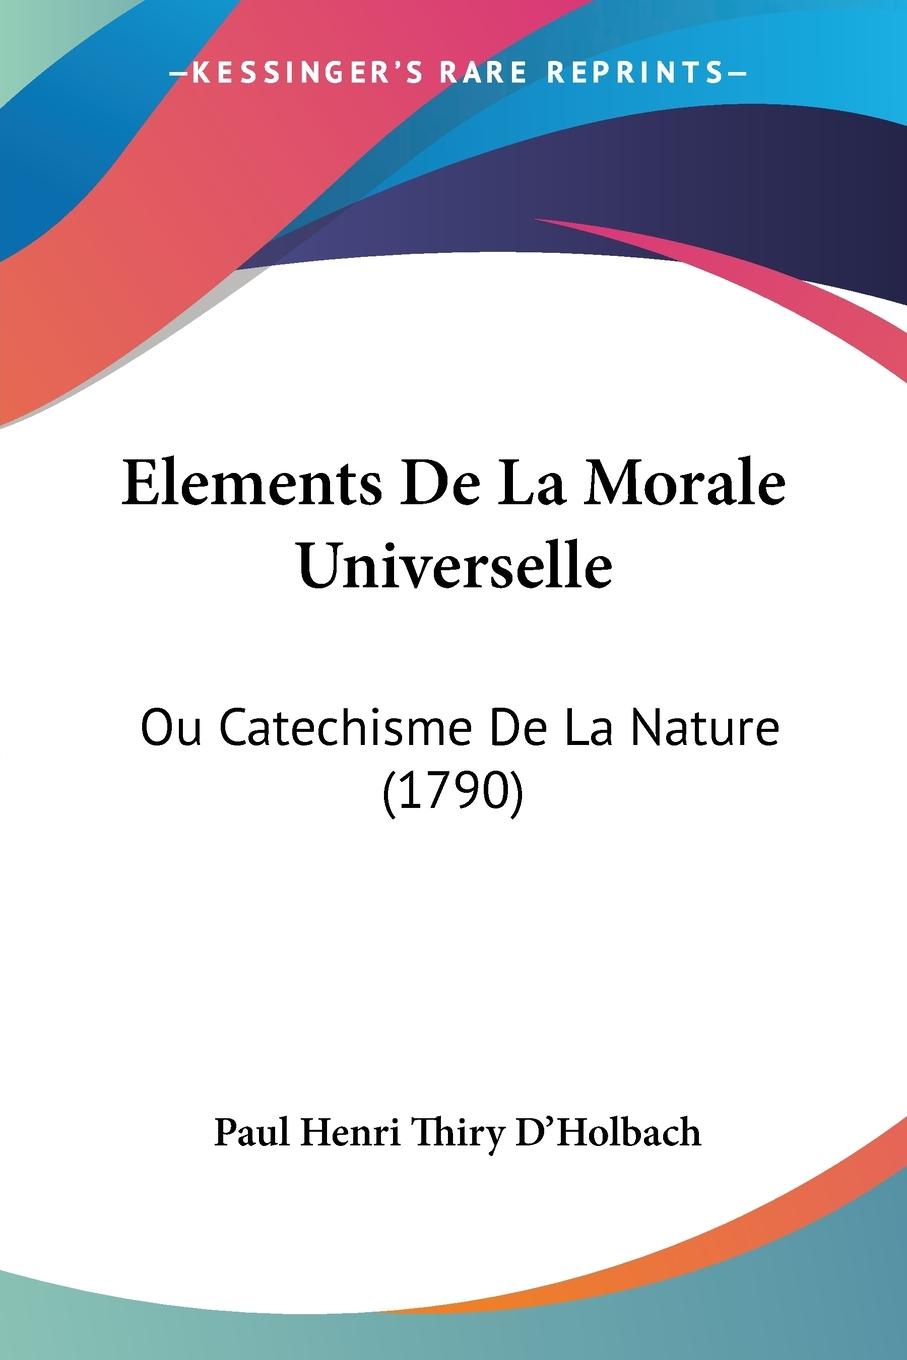 Elements De La Morale Universelle - D Holbach, Paul Henri Thiry